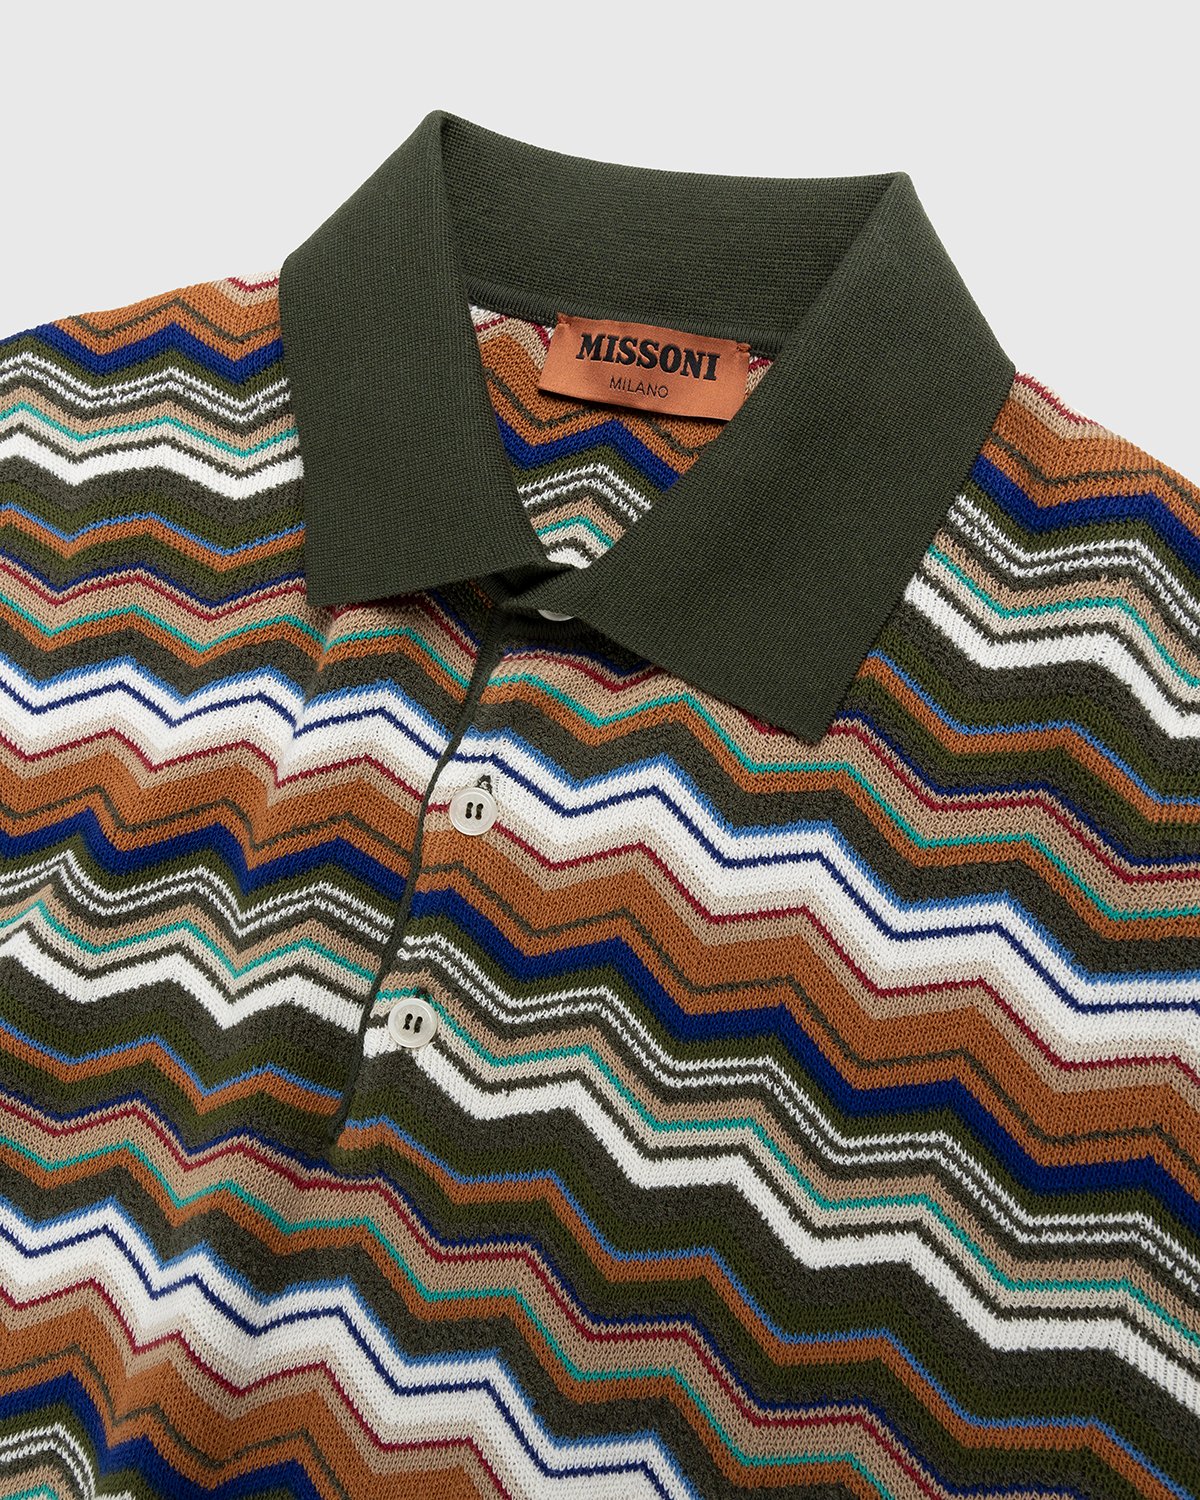 Missoni - Zig Zag Polo Shirt Multi - Clothing - Multi - Image 4